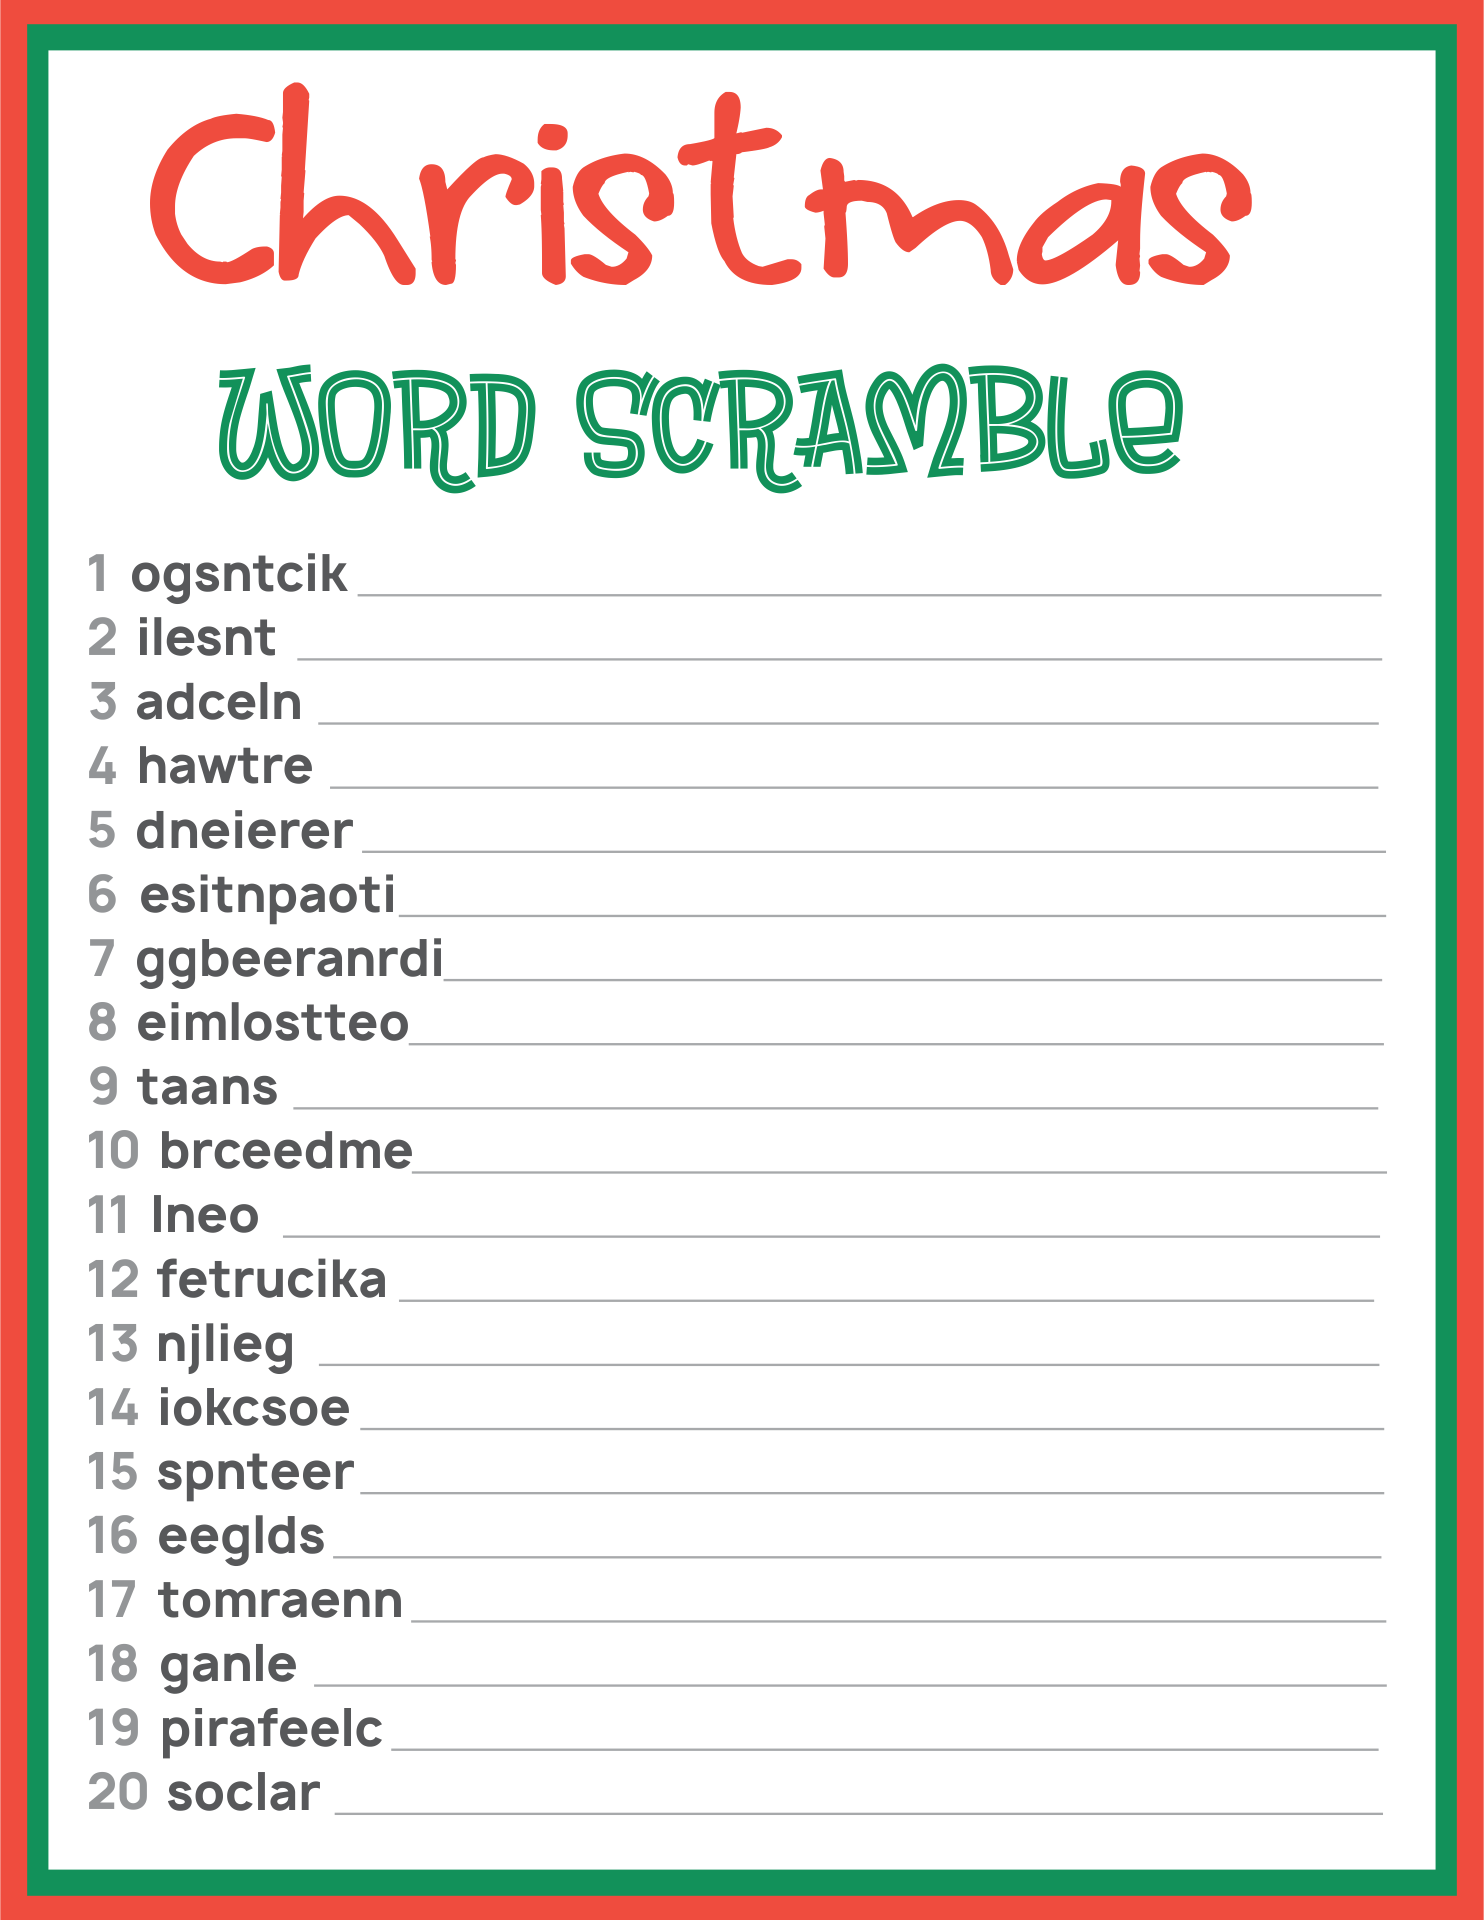 free-printable-christmas-word-scramble-with-answers-printable-word